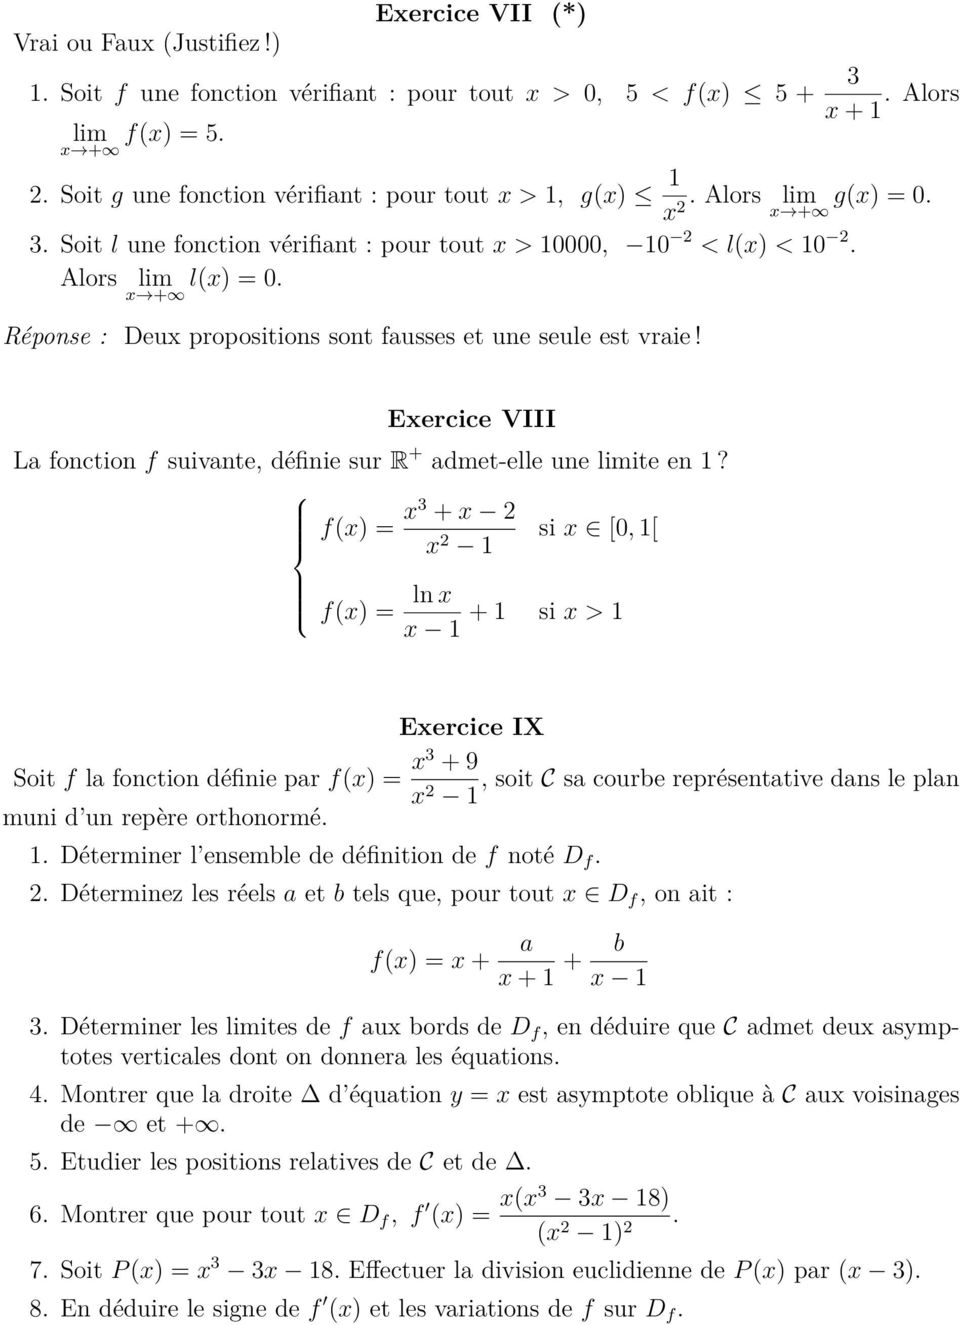 Exercice VIII La fonction f suivante, définie sur R + admet-elle une limite en 1?